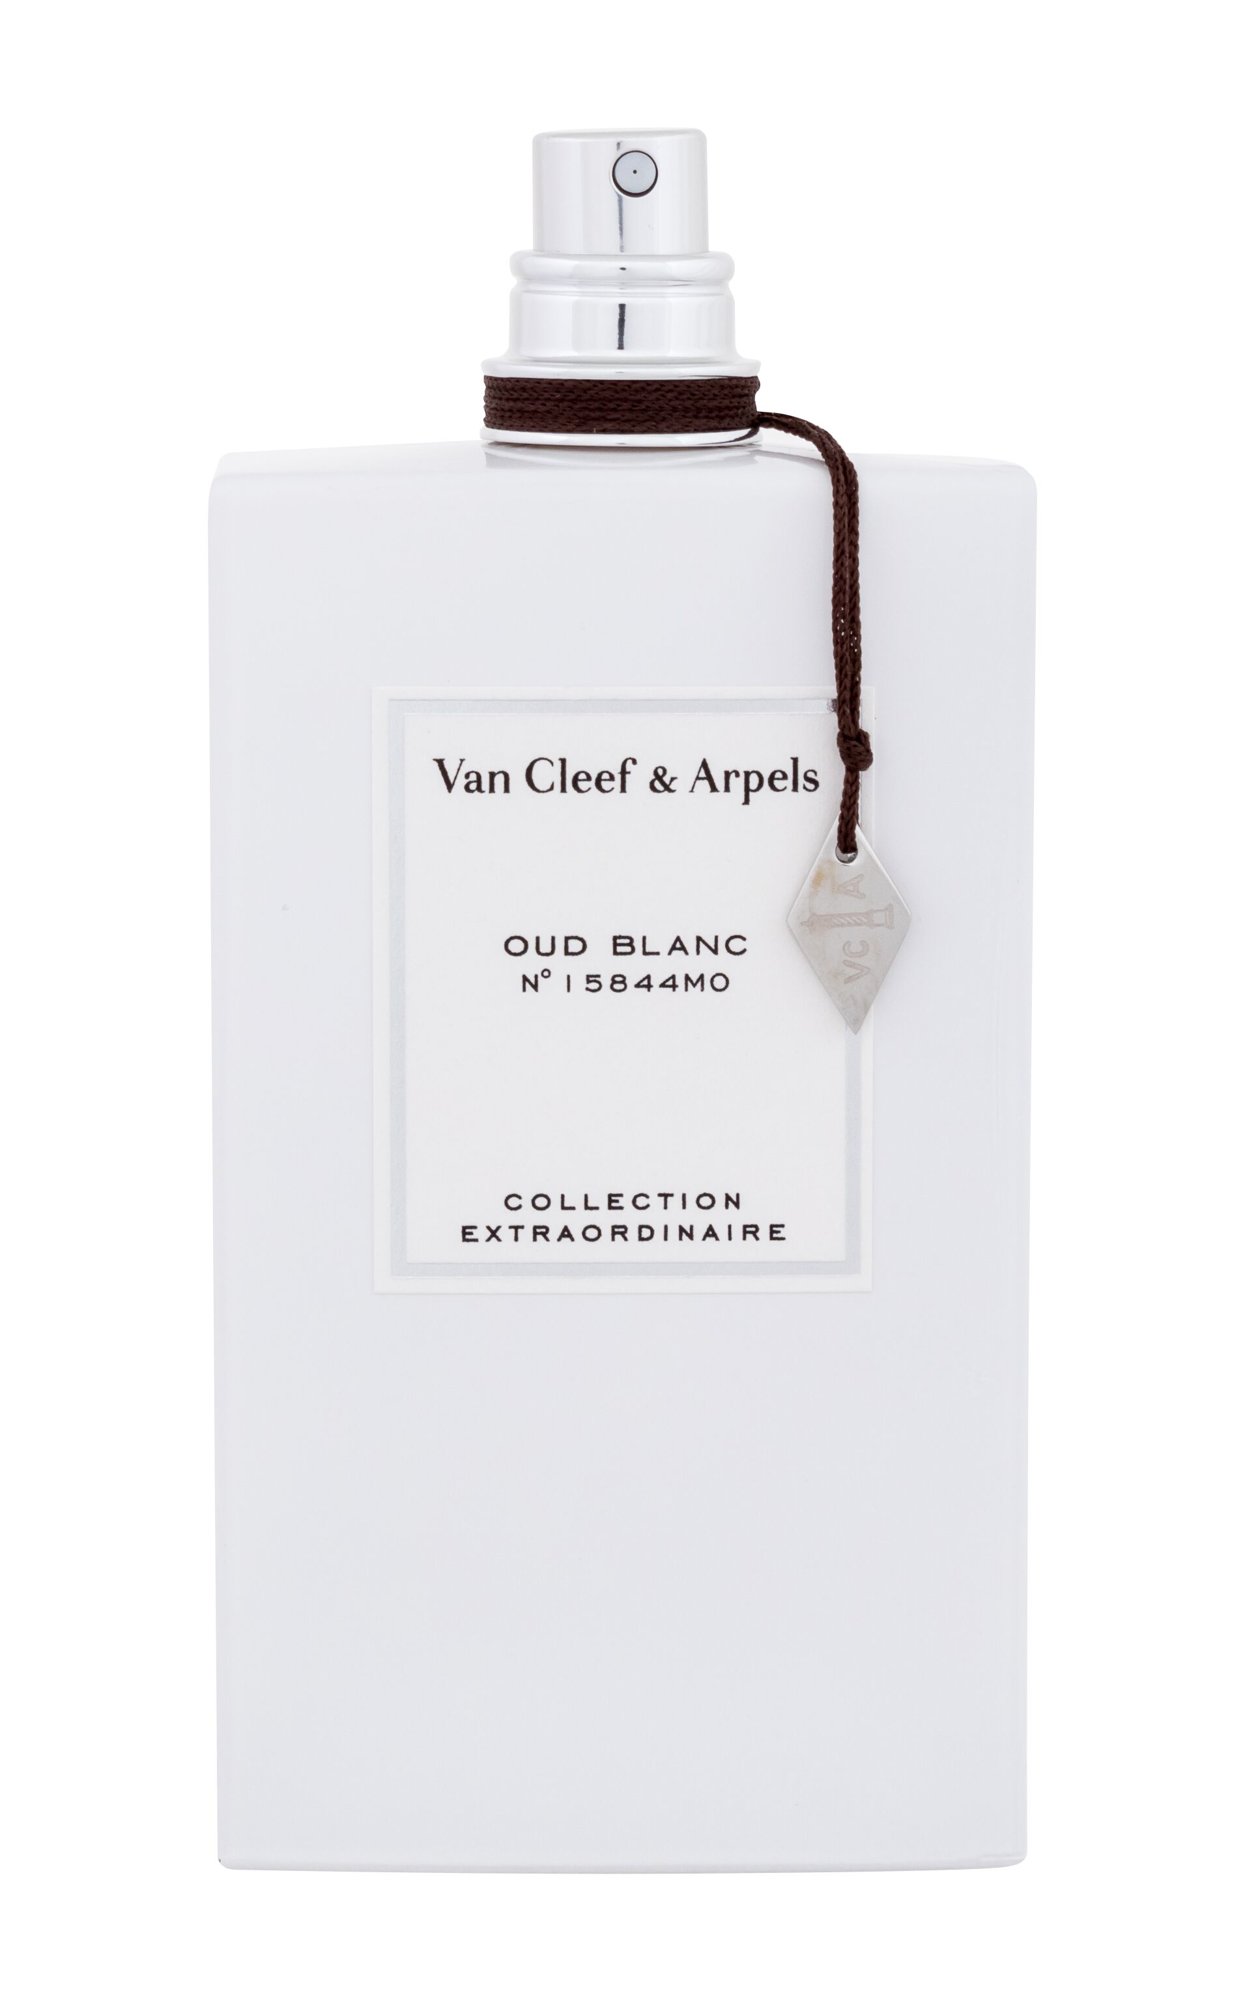 Van Cleef & Arpels Collection Extraordinaire Oud Blanc 5 ml NIŠINIAI kvepalų mėginukas (atomaizeris) Unisex EDP